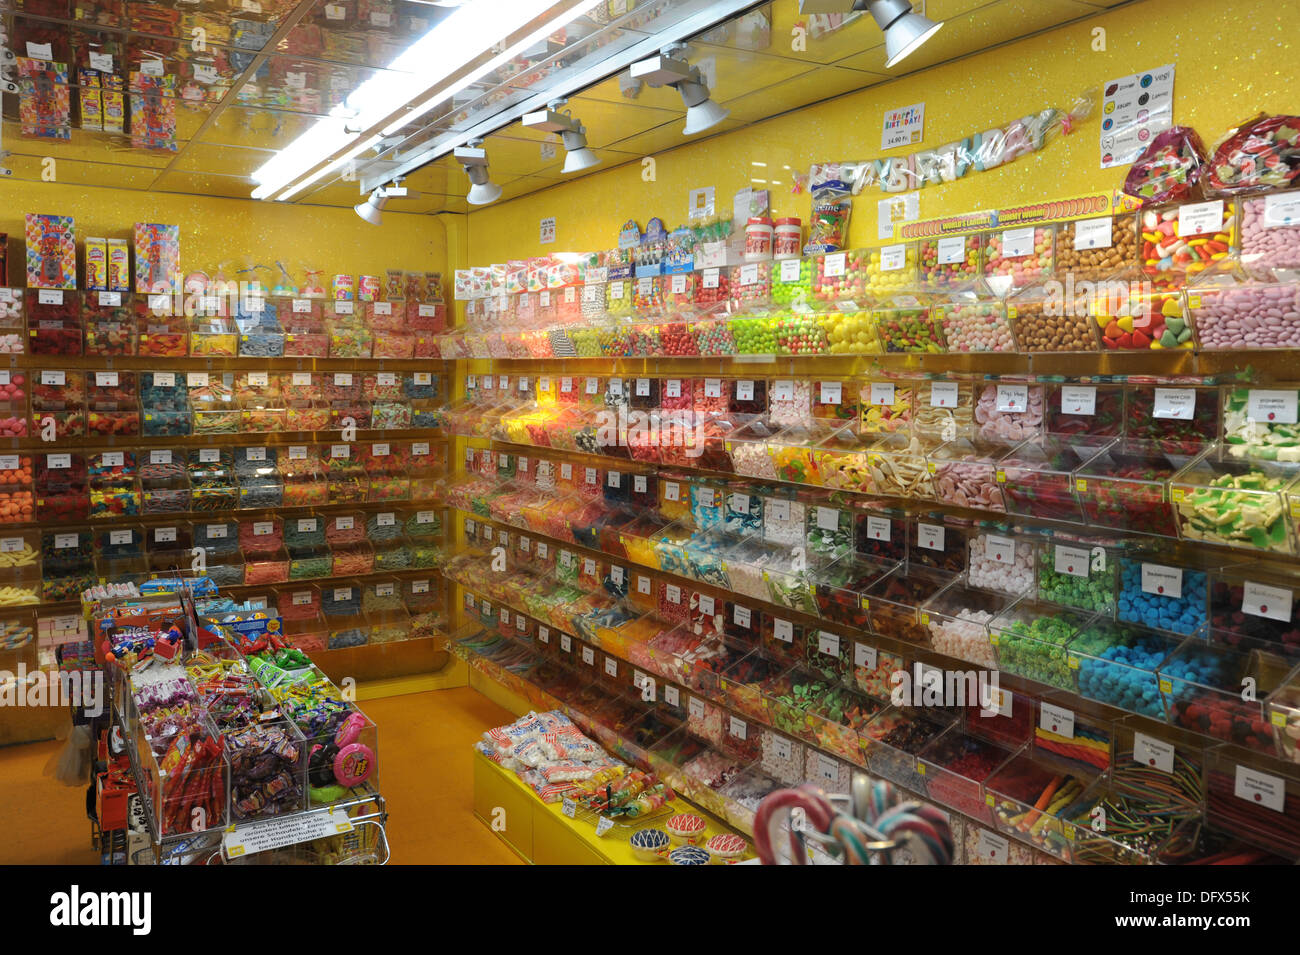 Shop von Kandis und Süßigkeiten in Bern in der Schweiz Stockfotografie -  Alamy